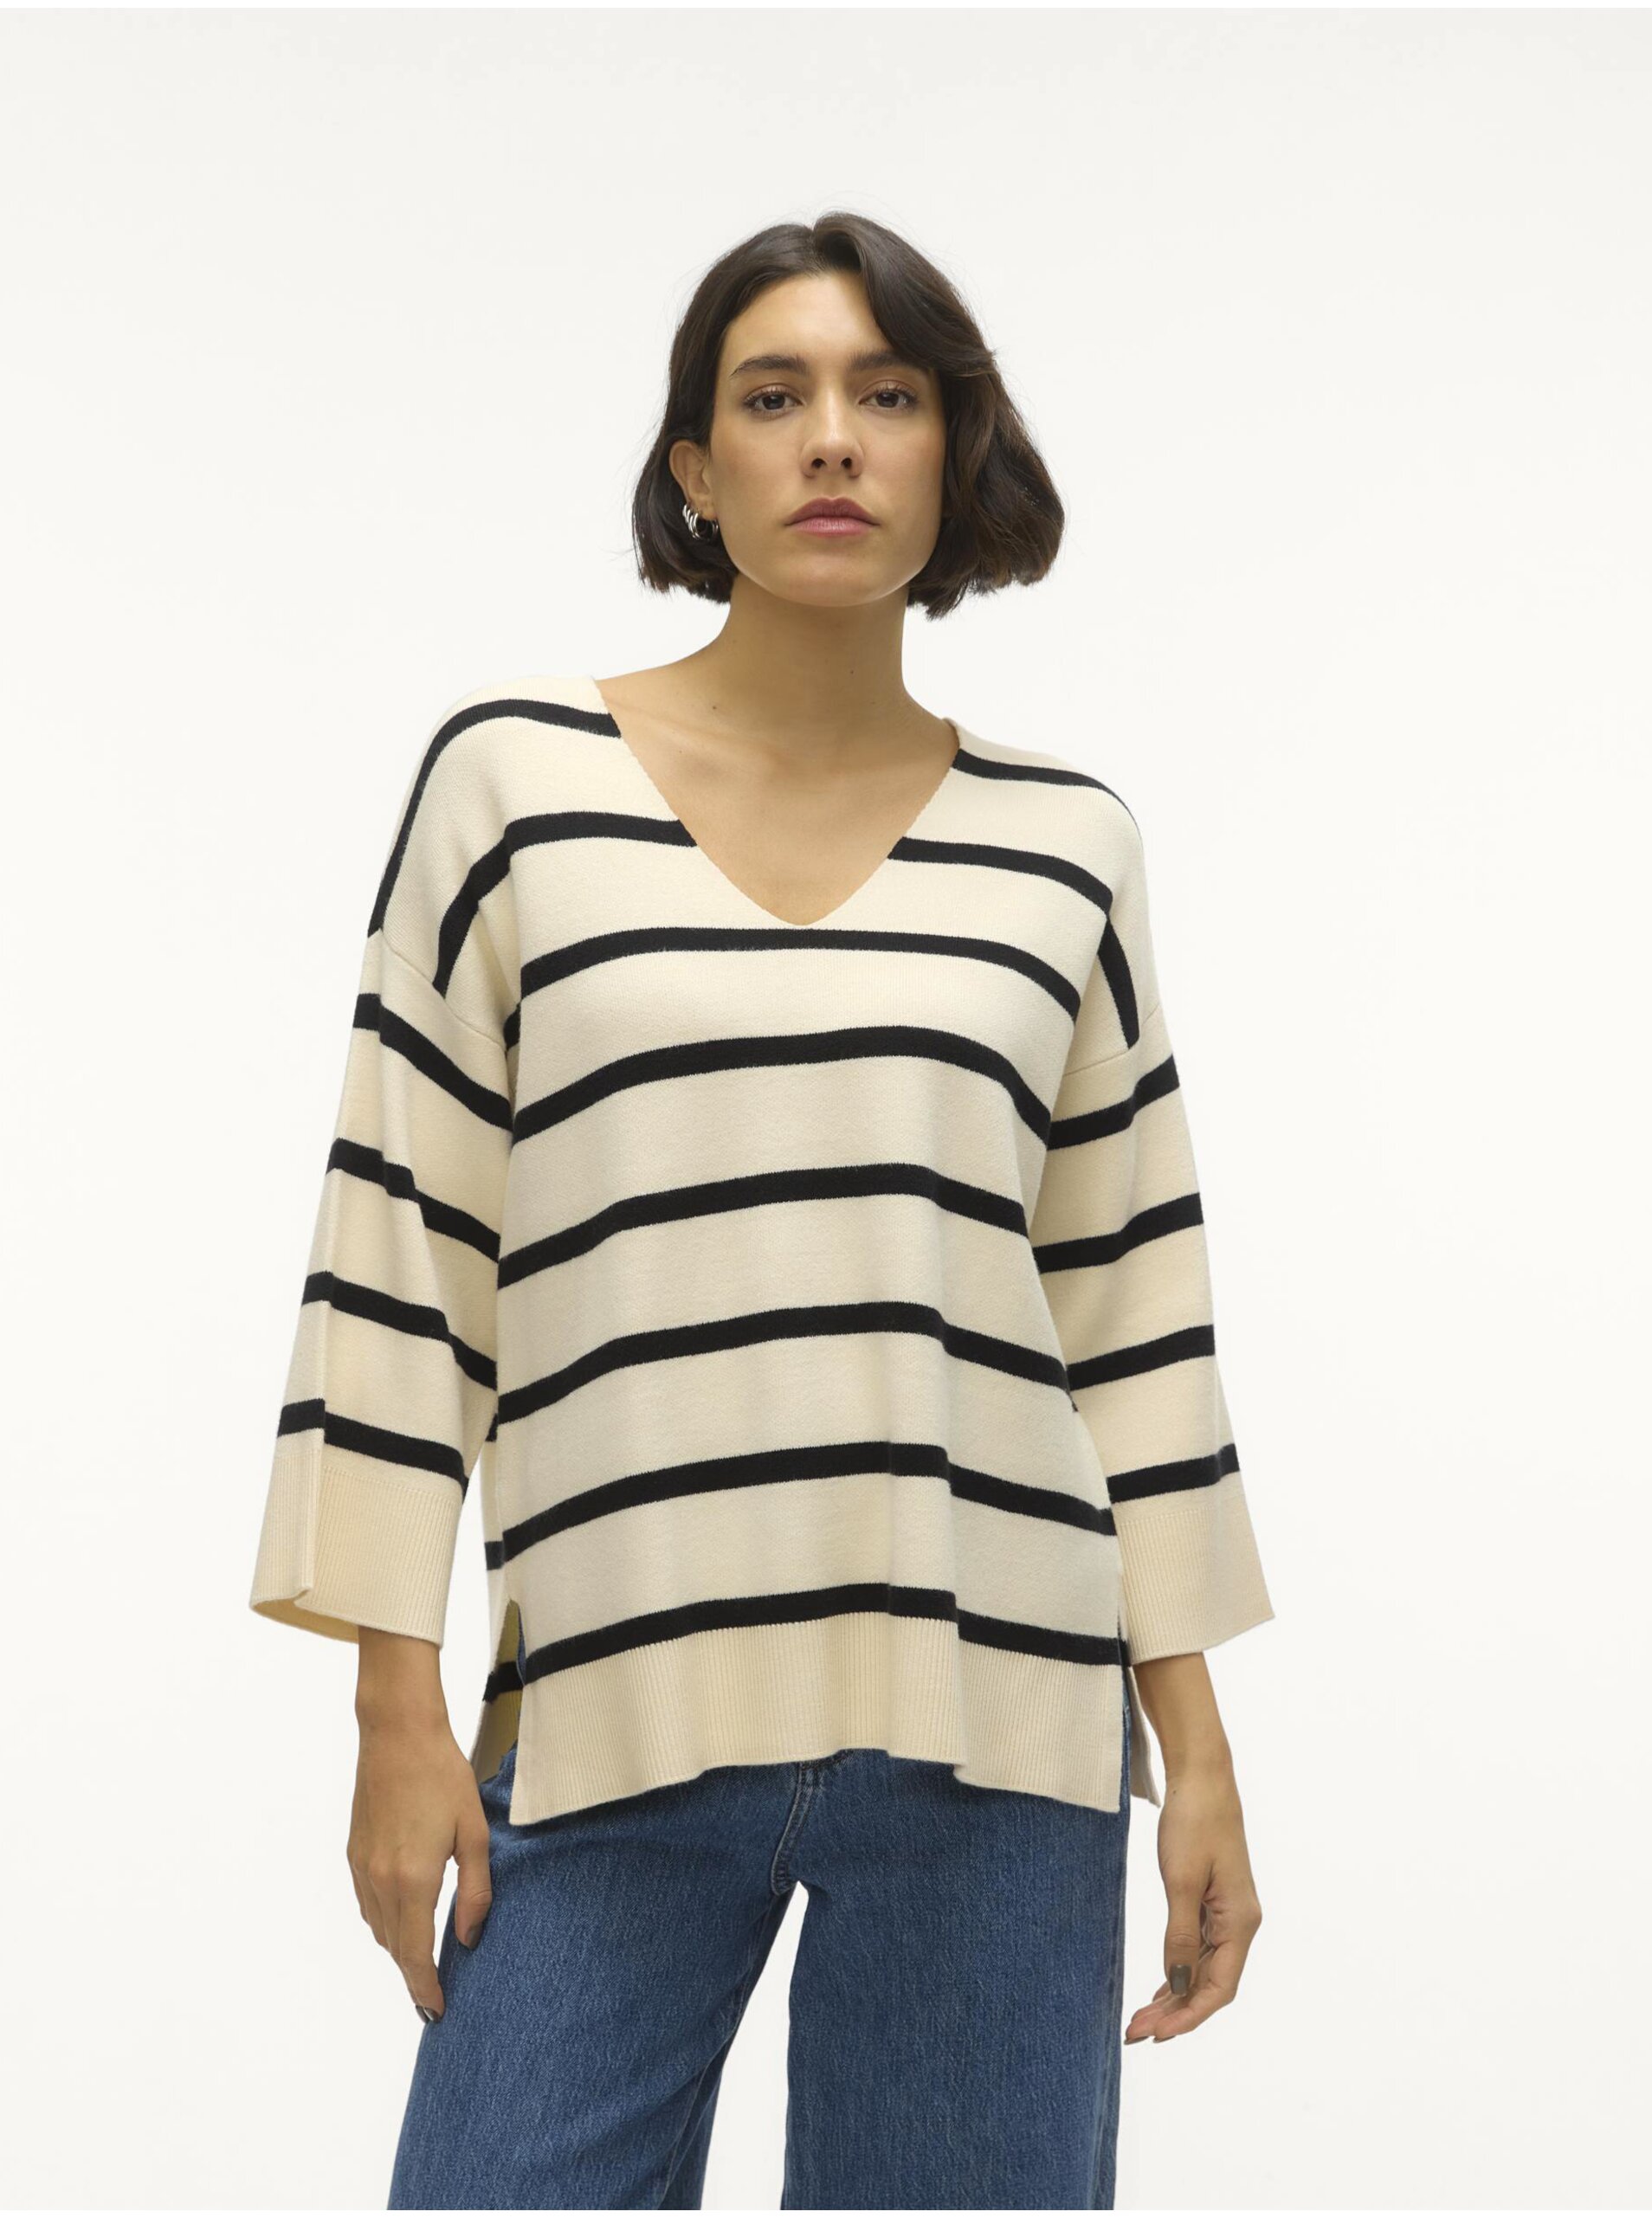 E-shop Černo-krémový dámský pruhovaný svetr Vero Moda Saba